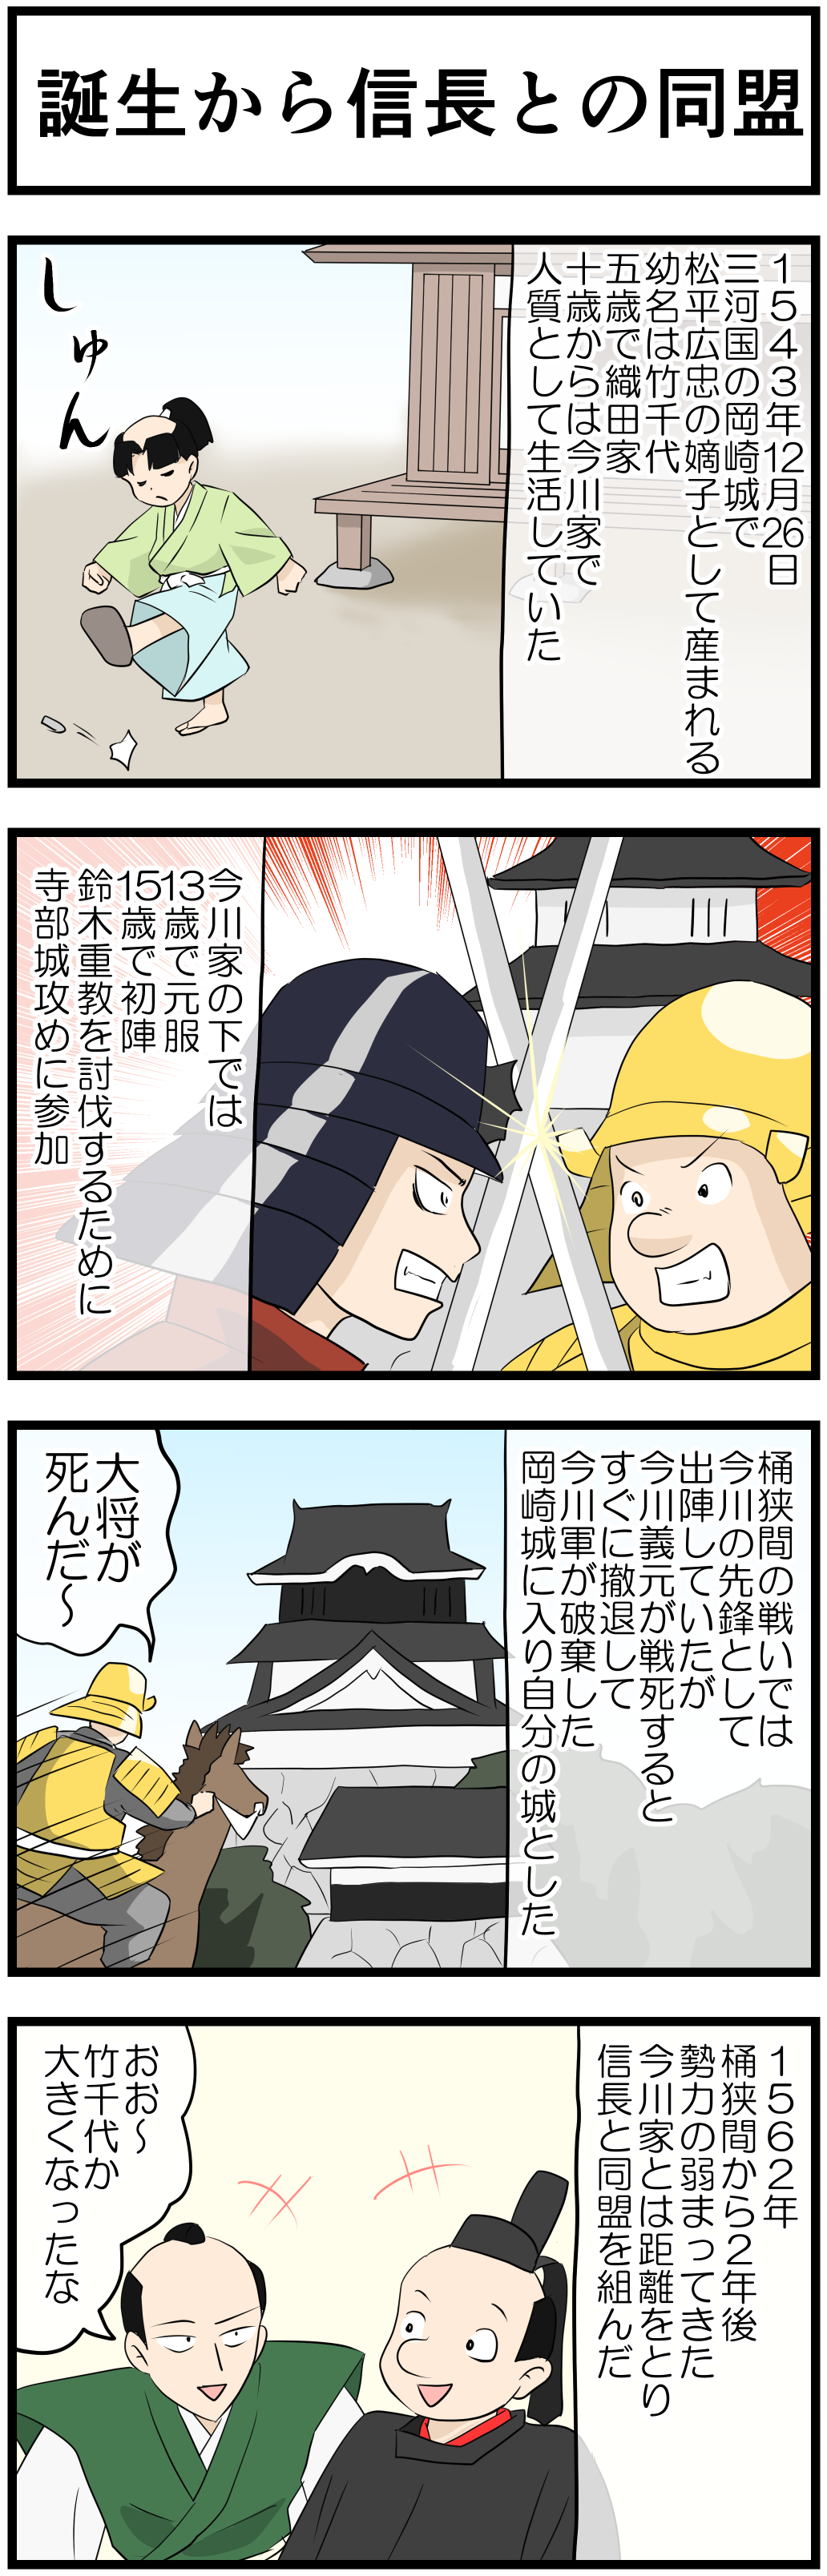 徳川家康の一生 4コマ漫画で歴史の勉強 Novita 勉強法